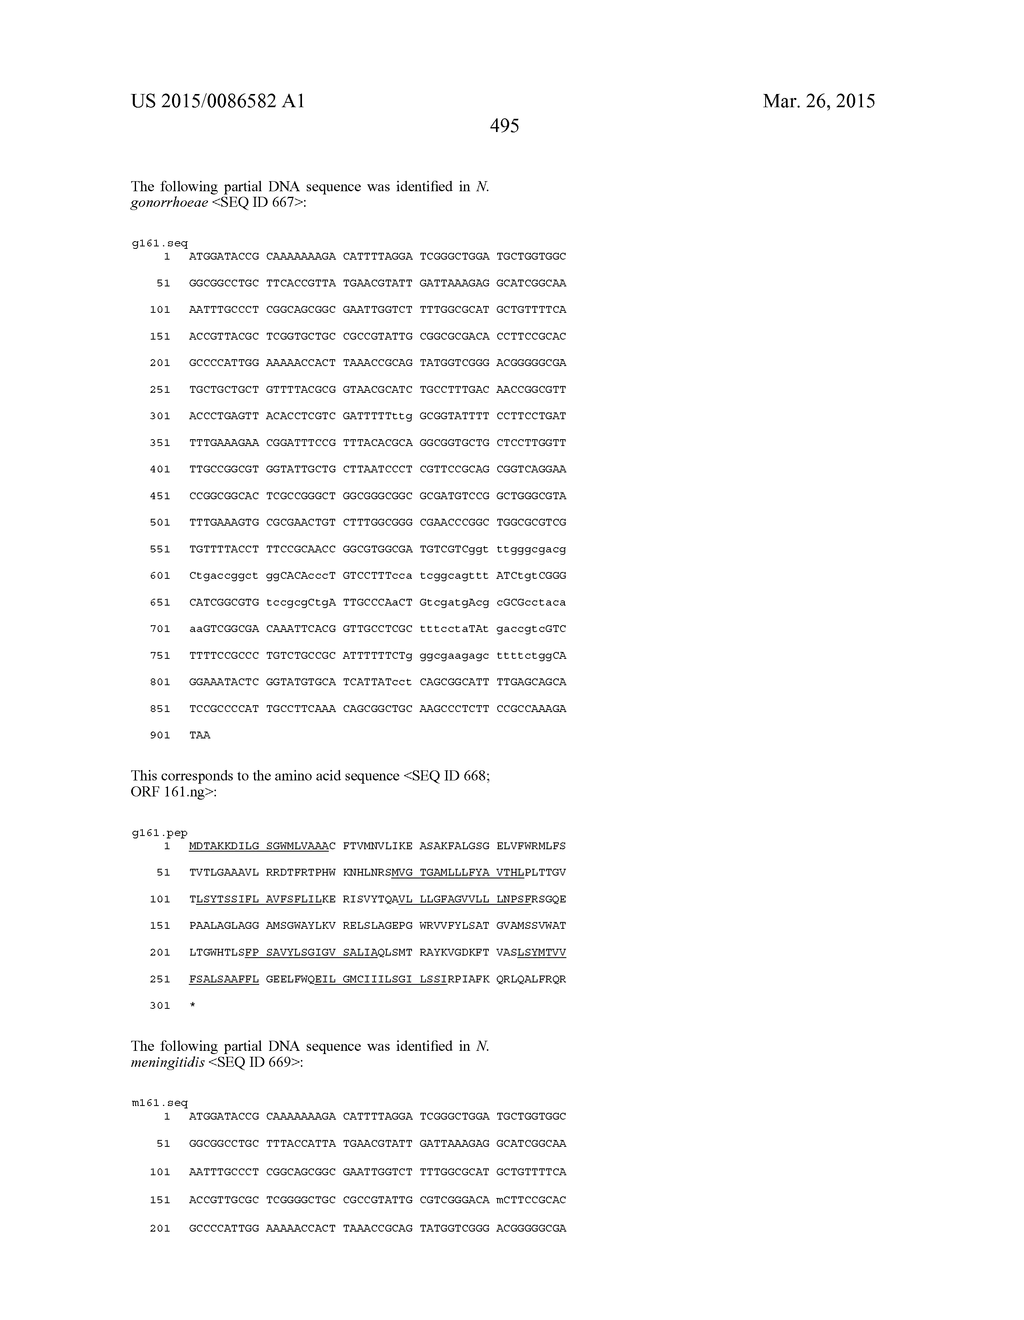 NEISSERIA MENINGITIDIS ANTIGENS AND COMPOSITIONS - diagram, schematic, and image 527